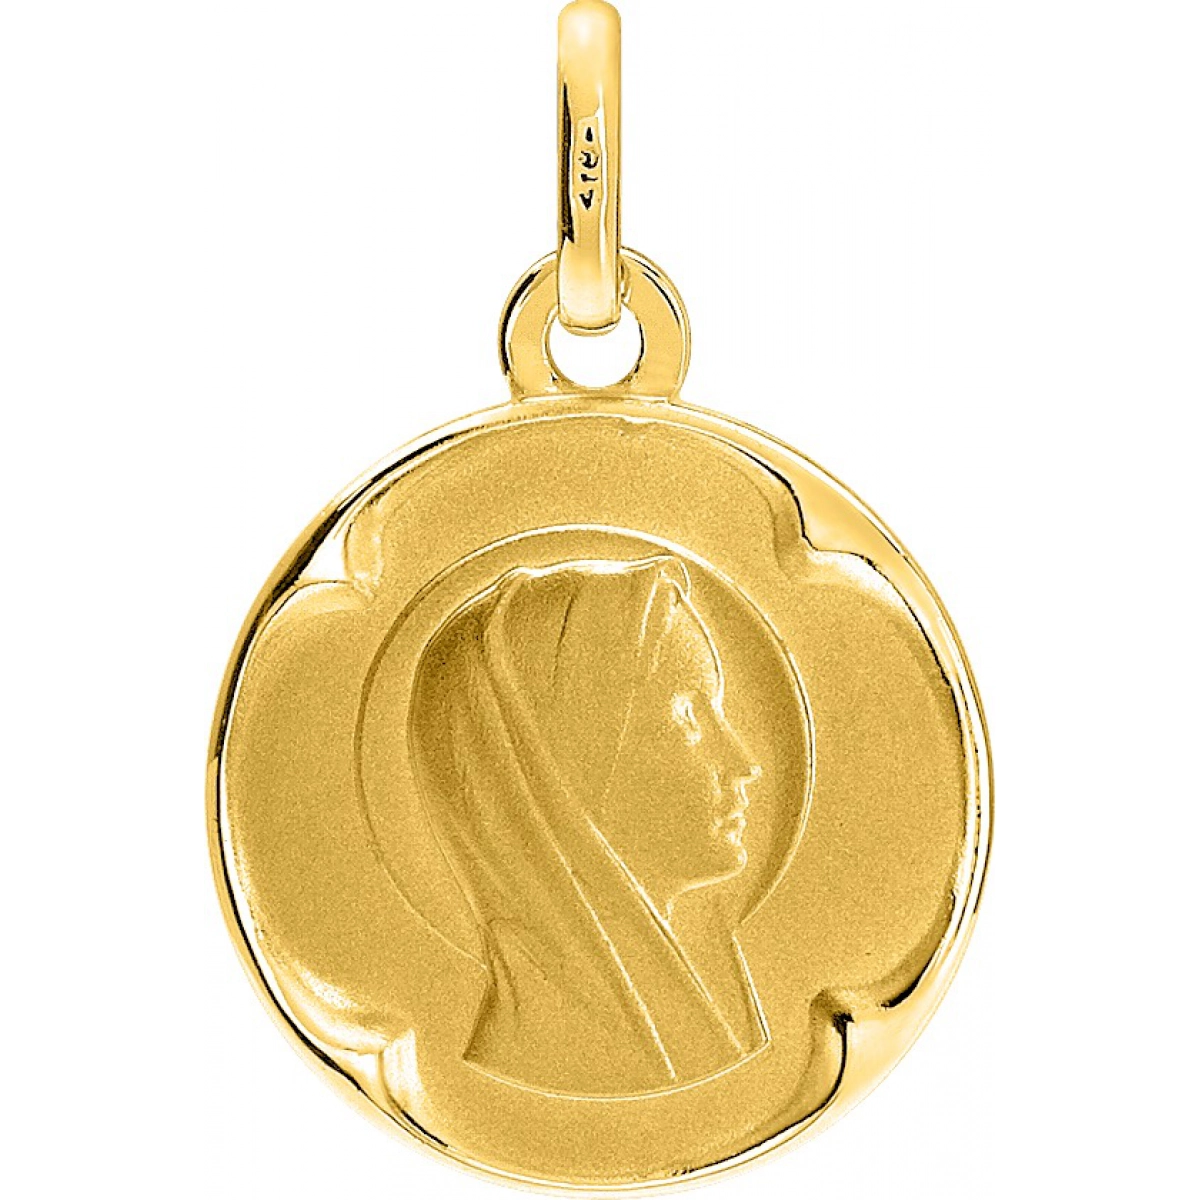 Medaille vierge or750j  Lua Blanca  20861.0